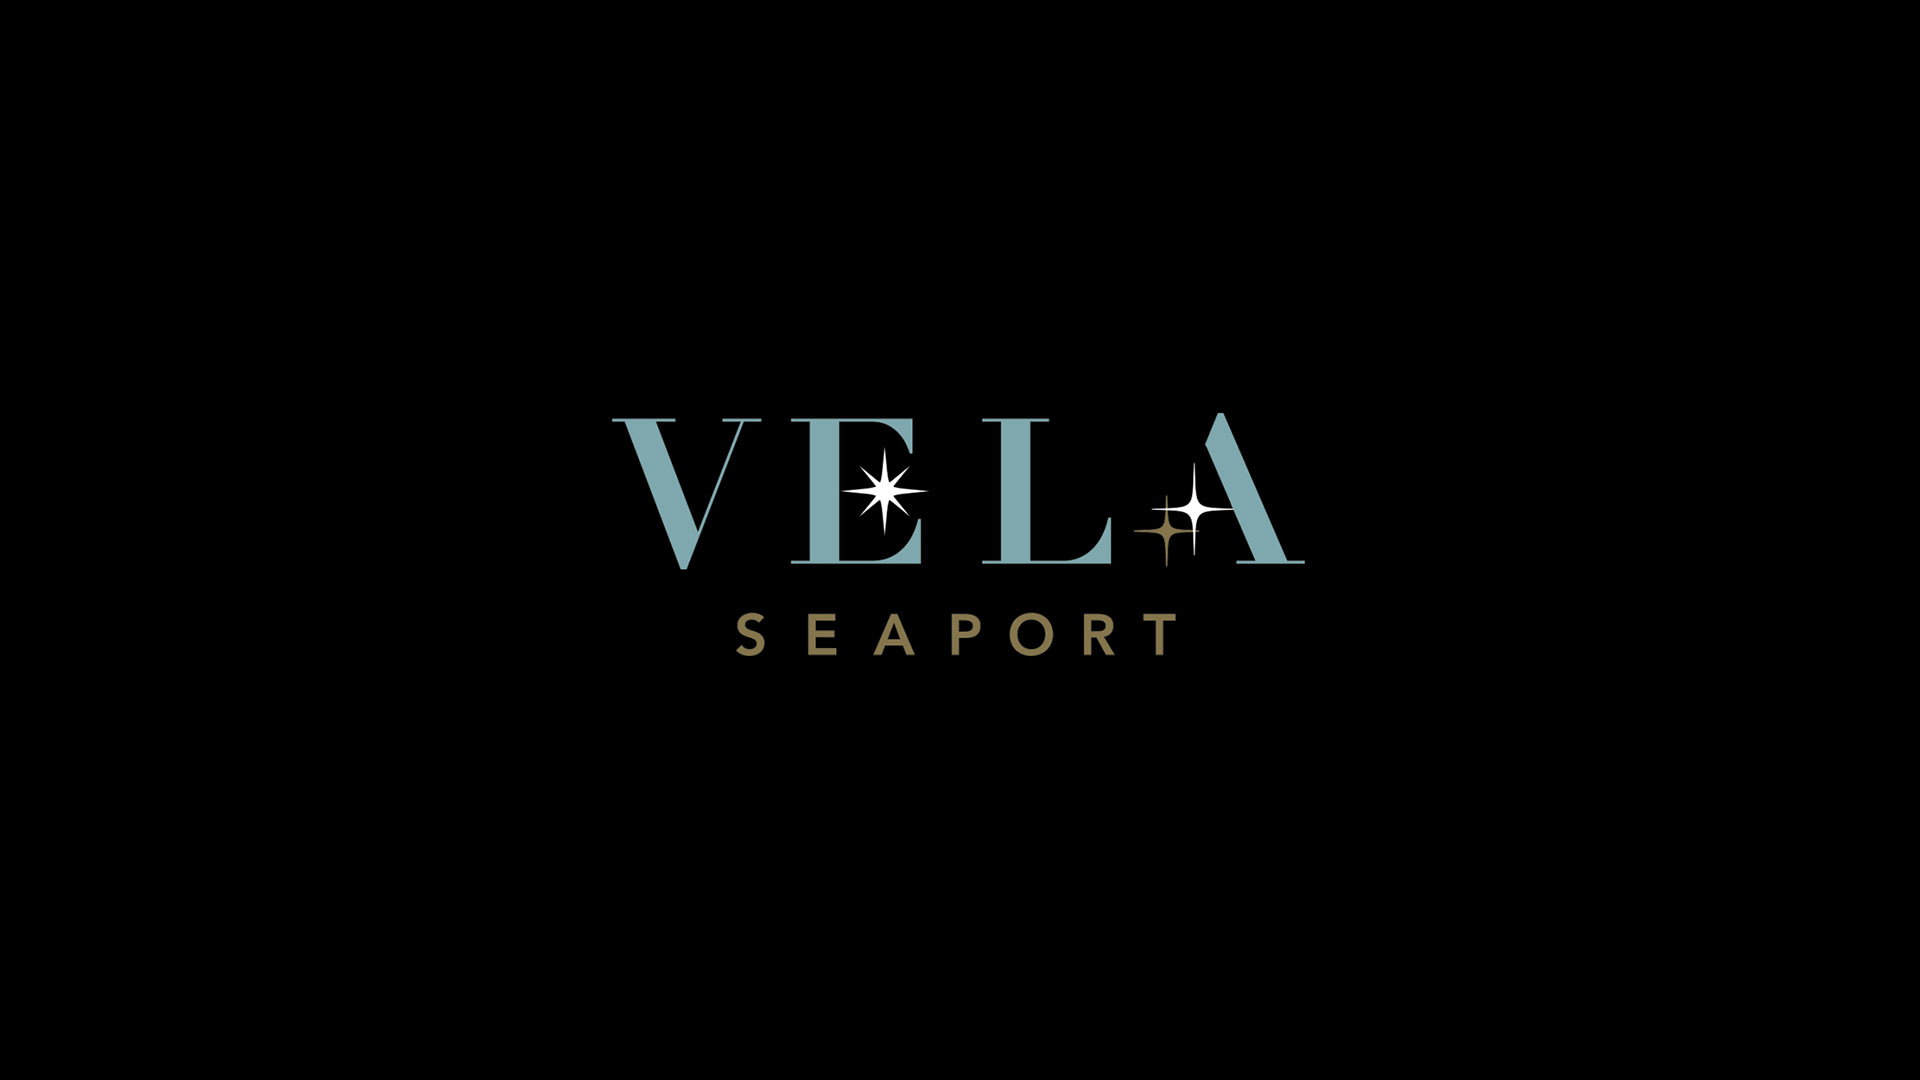 vela seaport larger logo on black